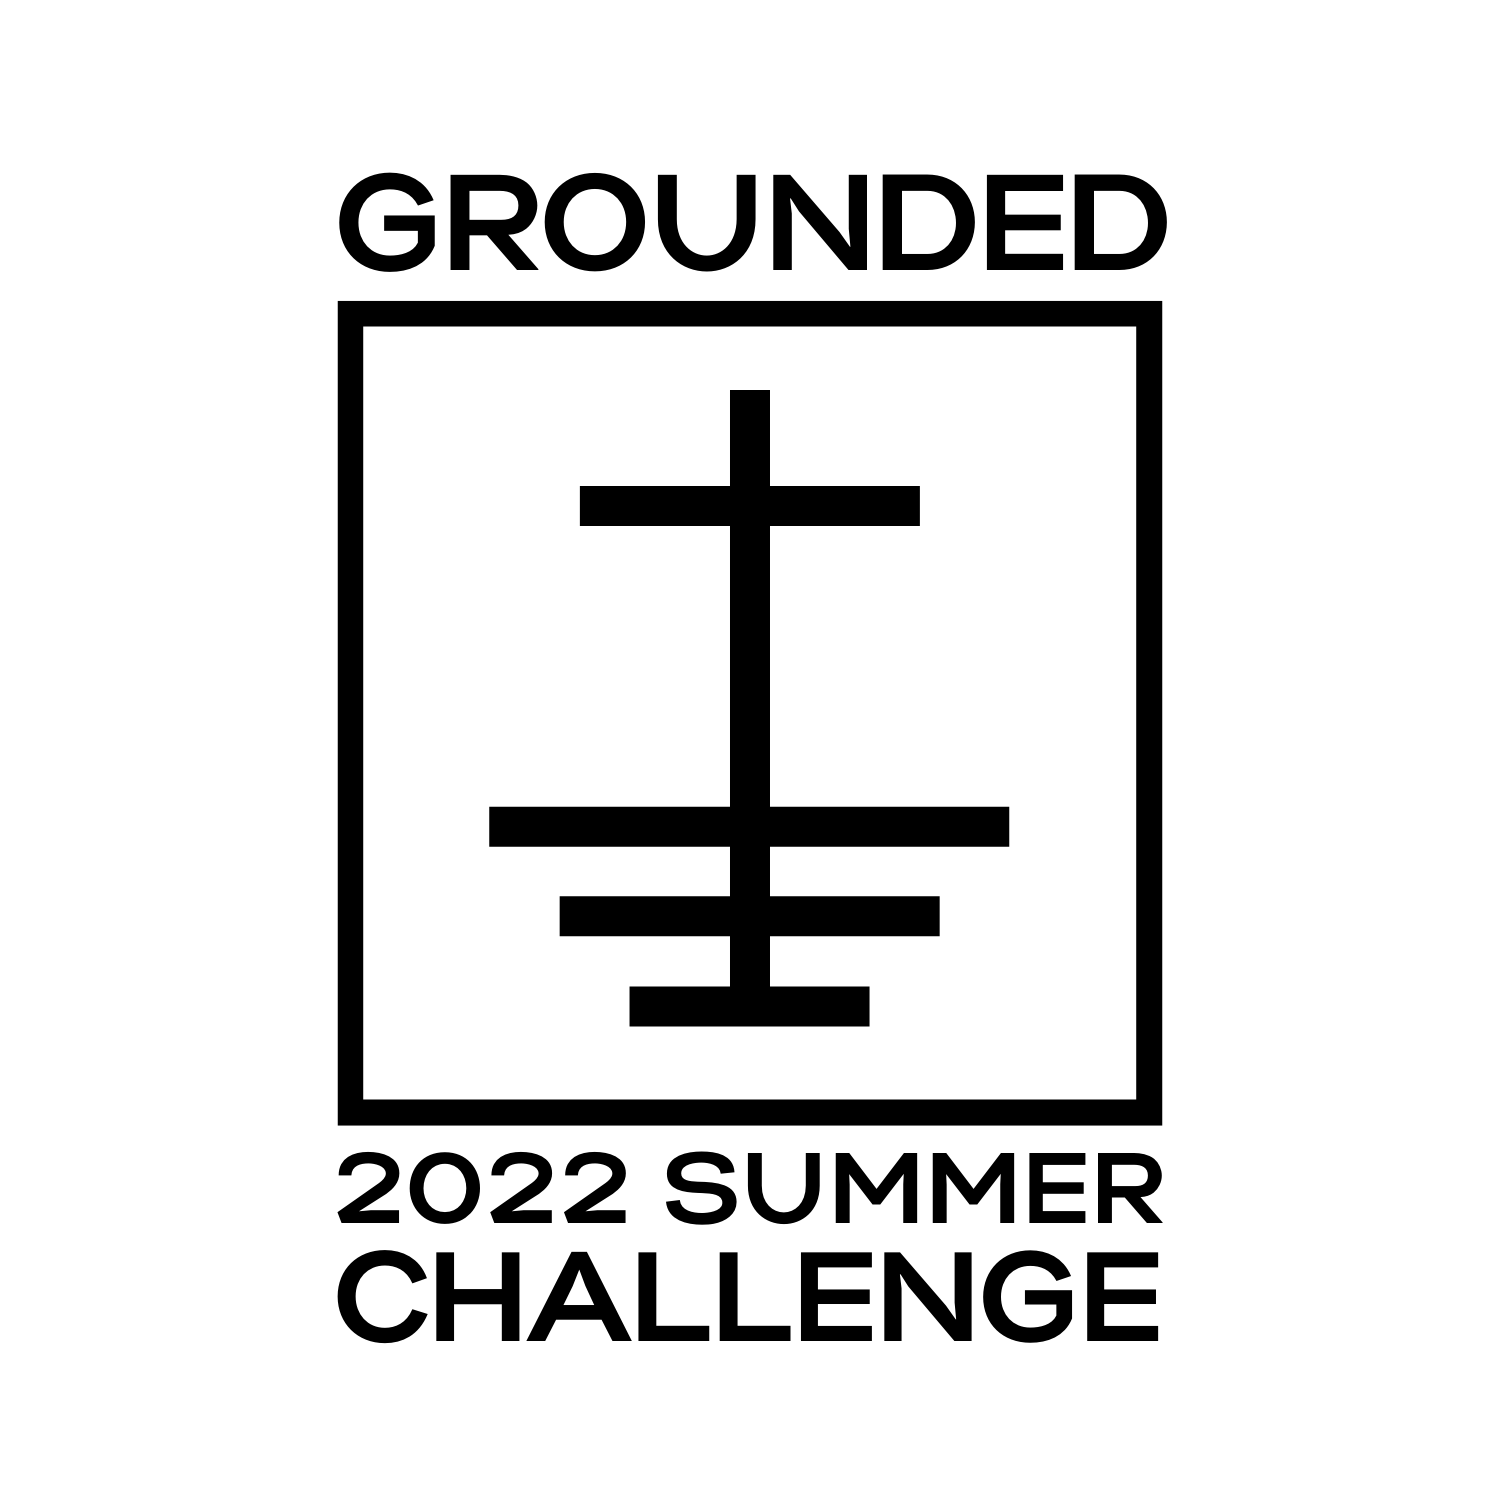 Copy of Summer Challenge 2021 logo - black